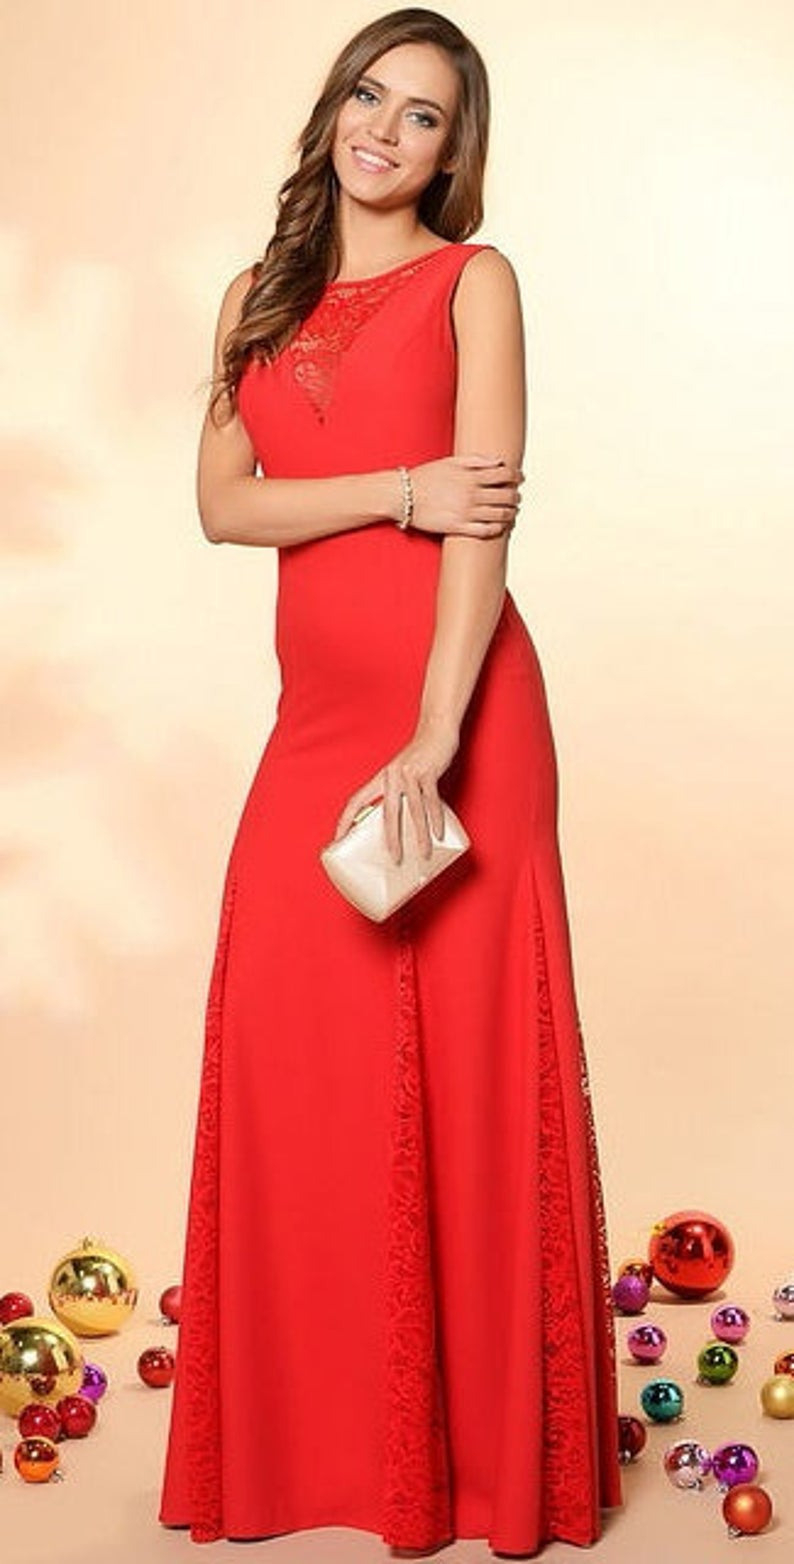 Rotes Kleid Fur Hochzeit  Hochzeits Idee